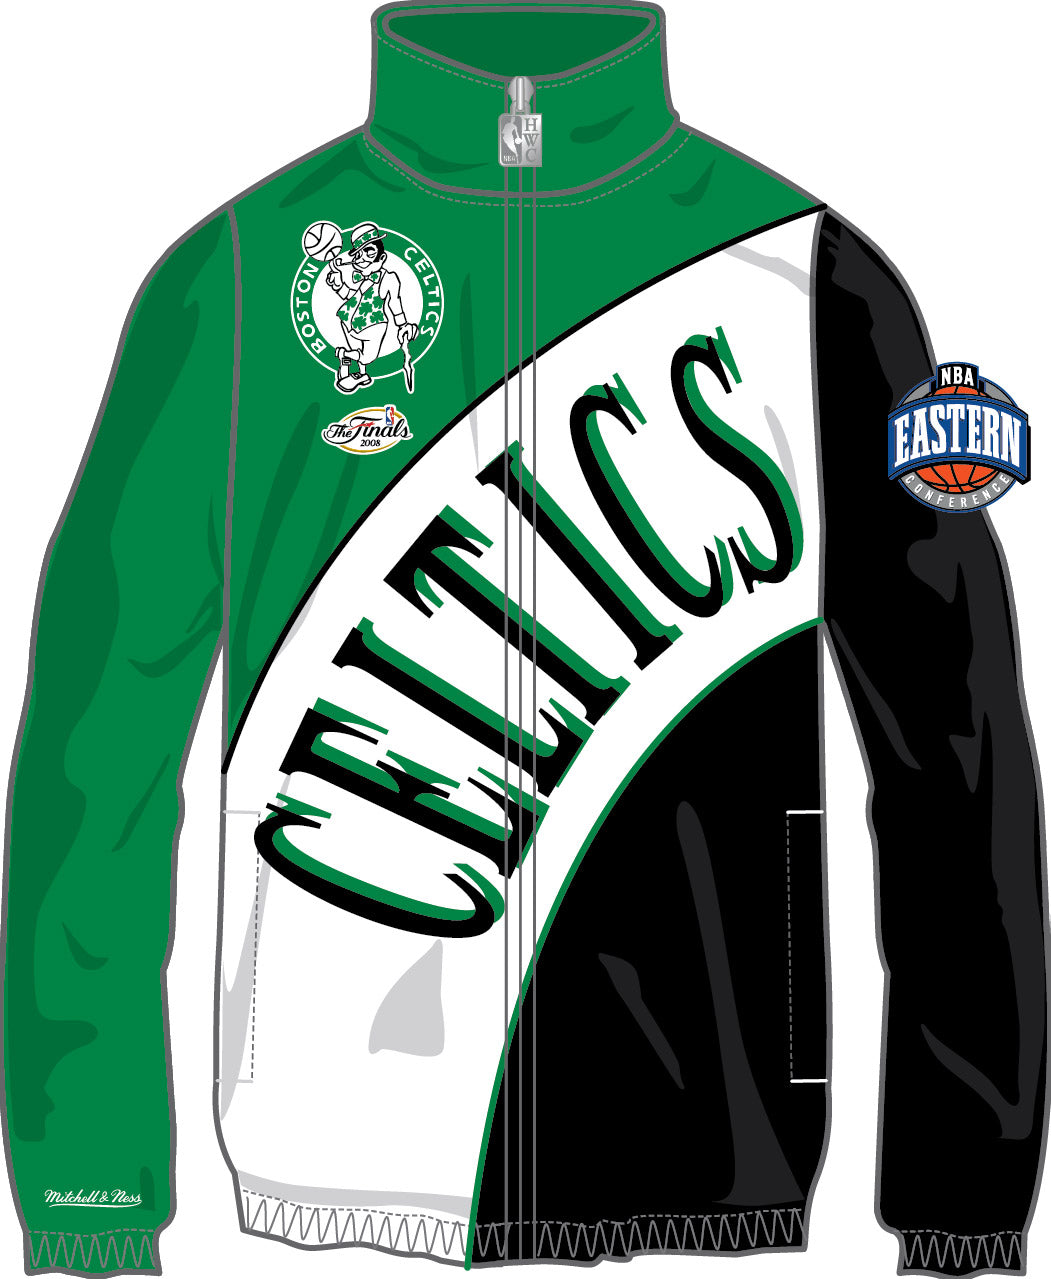 Vintage Unique NBA Teams Jacket